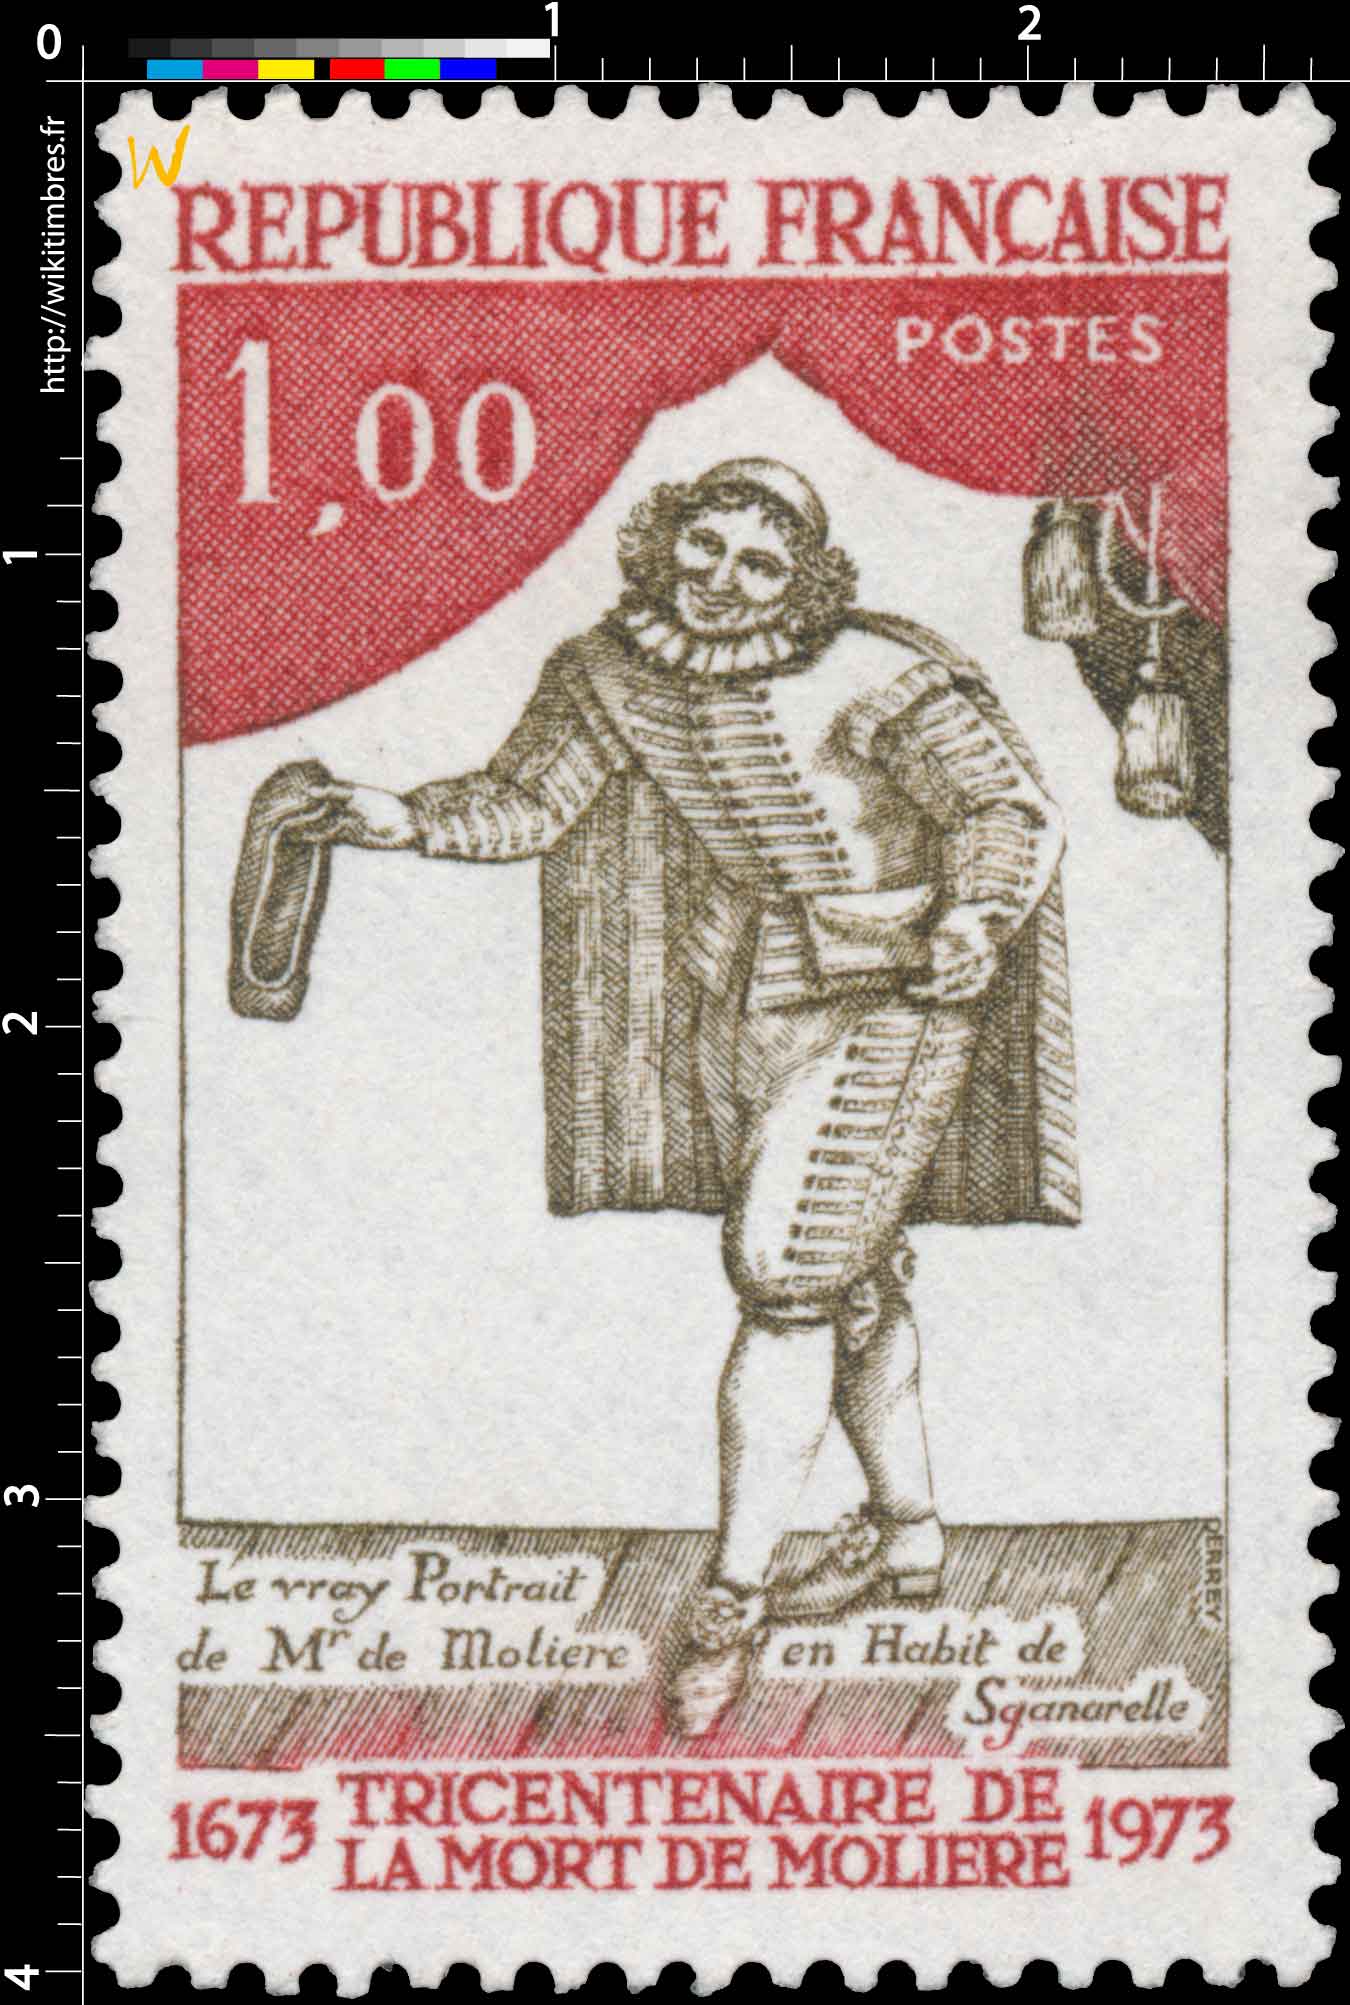 TRICENTENAIRE DE LA MORT DE MOLIÈRE 1673-1973 LE VRAY Portrait de Mr de Molière en Habit de Sganarelle